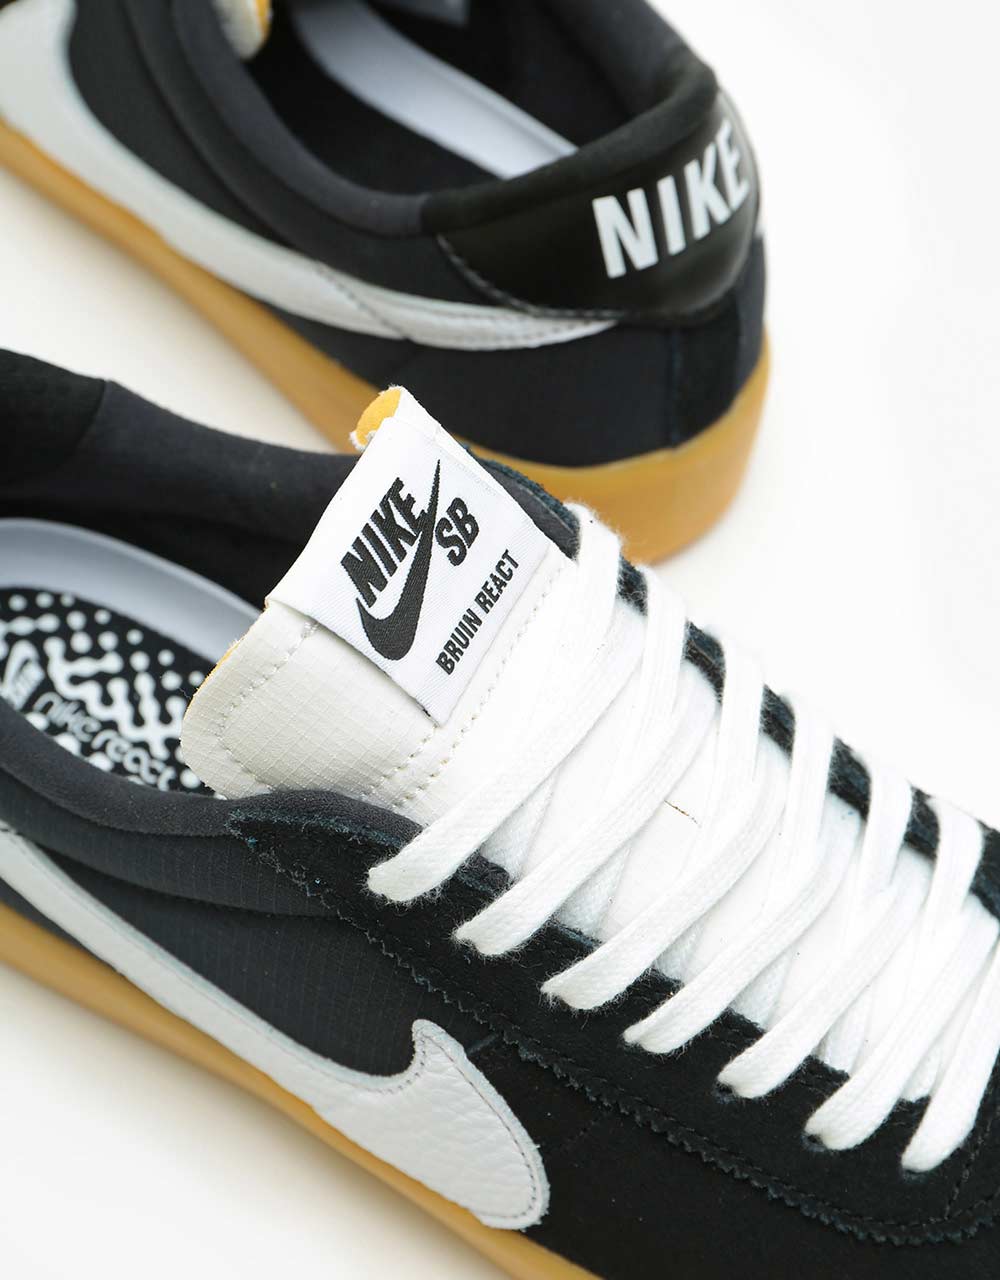 Nike SB Bruin React Skate Shoes - Black/White-Black-Gum Light Brown